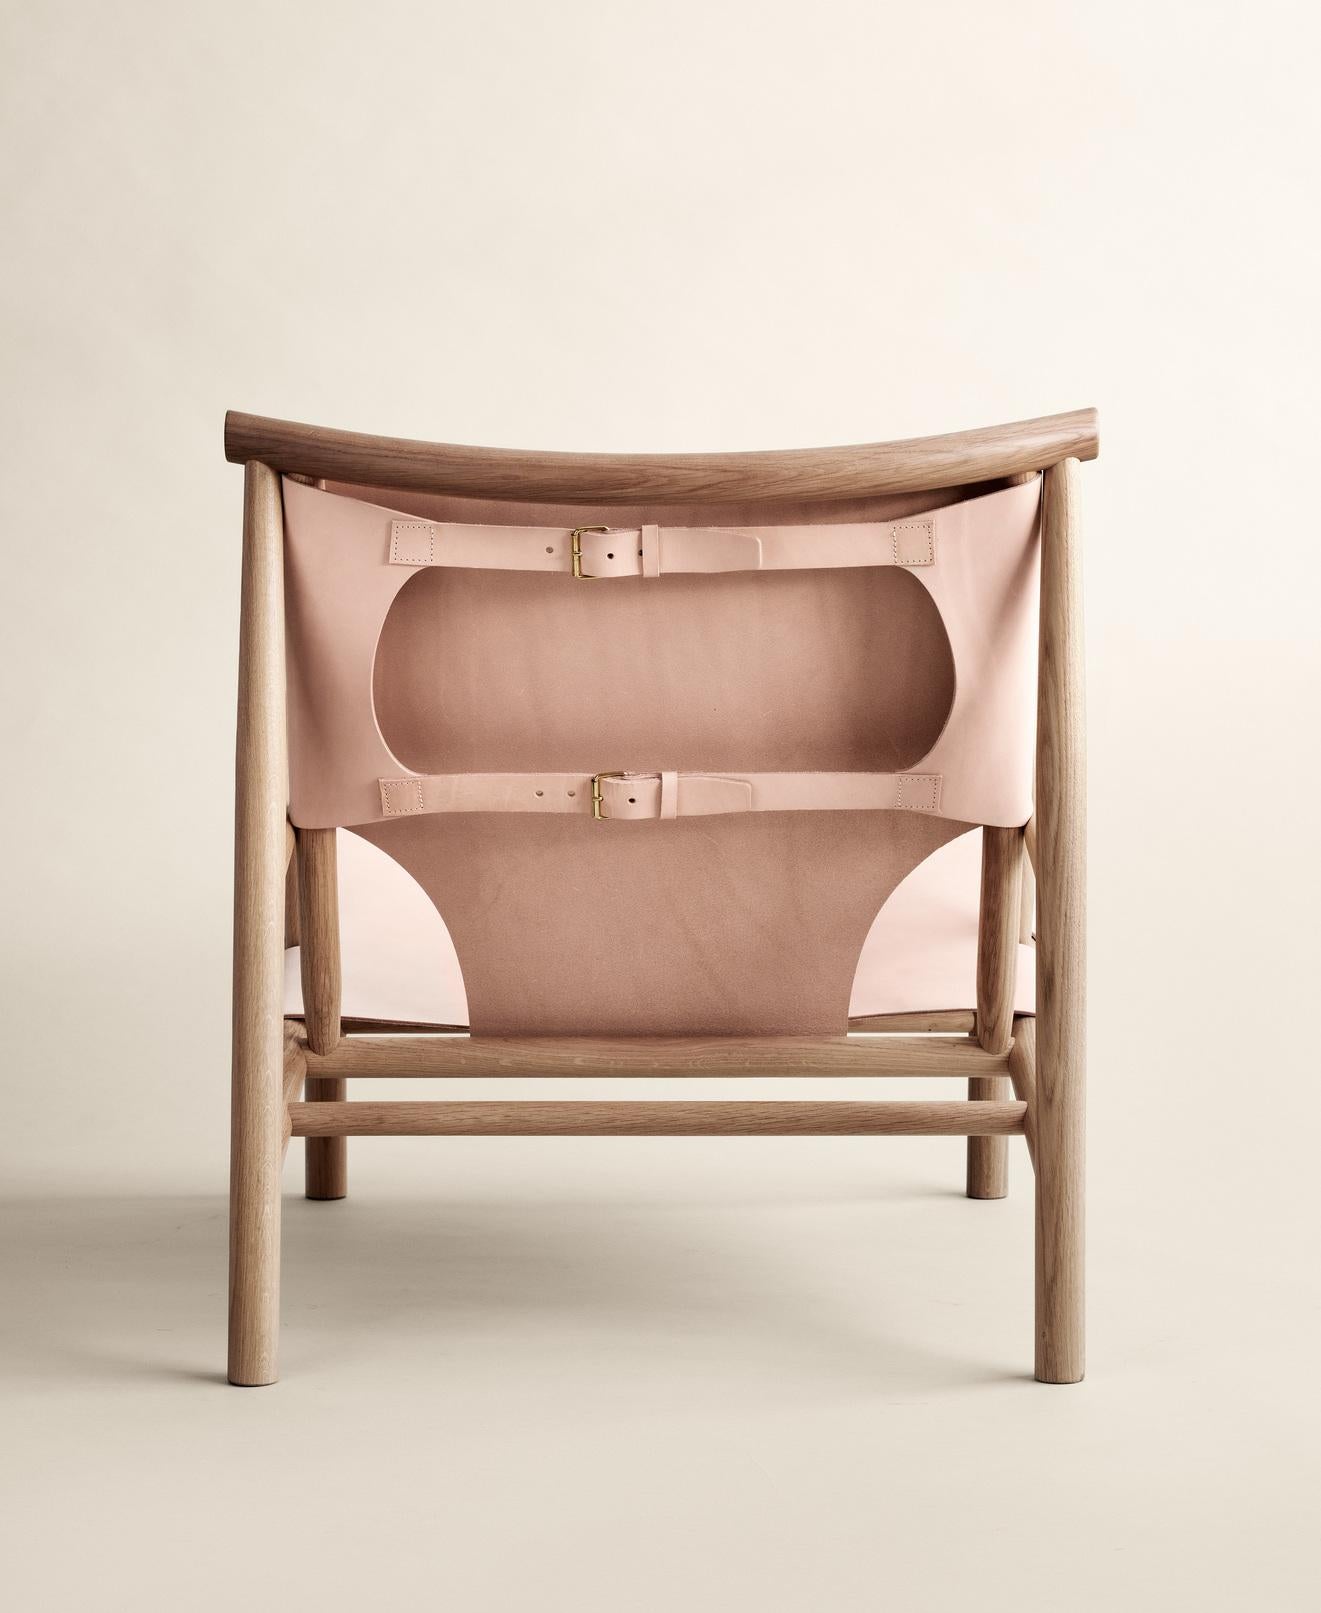 Danois Chaise contemporaine 'Samurai' par Norr11, Chêne naturel et cuir Nature en vente